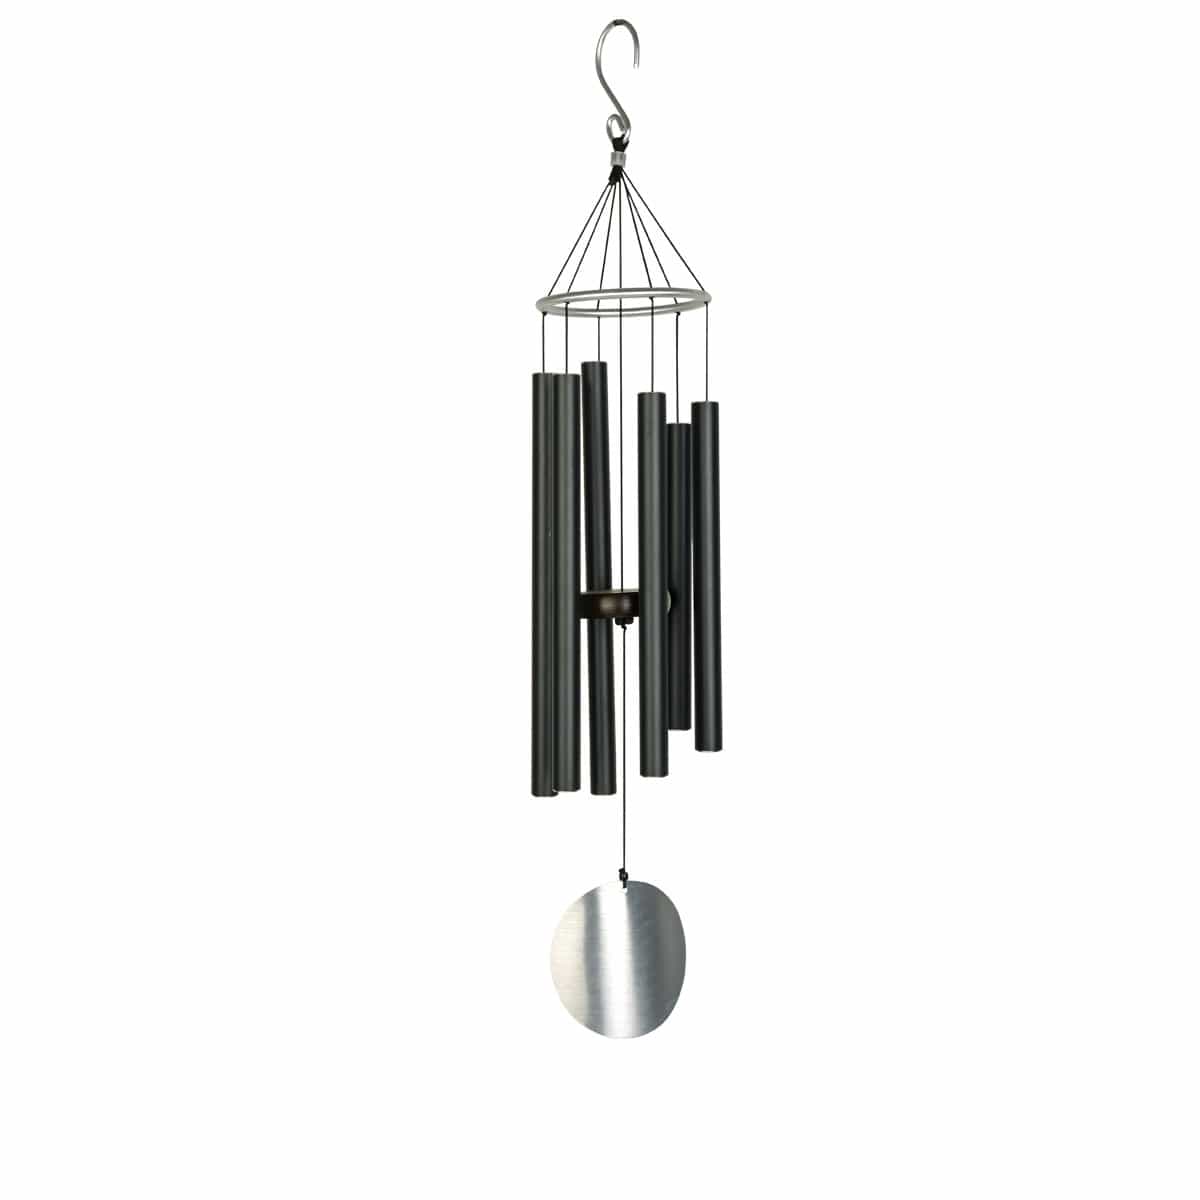 Carillon à vent – Oiseau noir métal – La Grange Sauvage